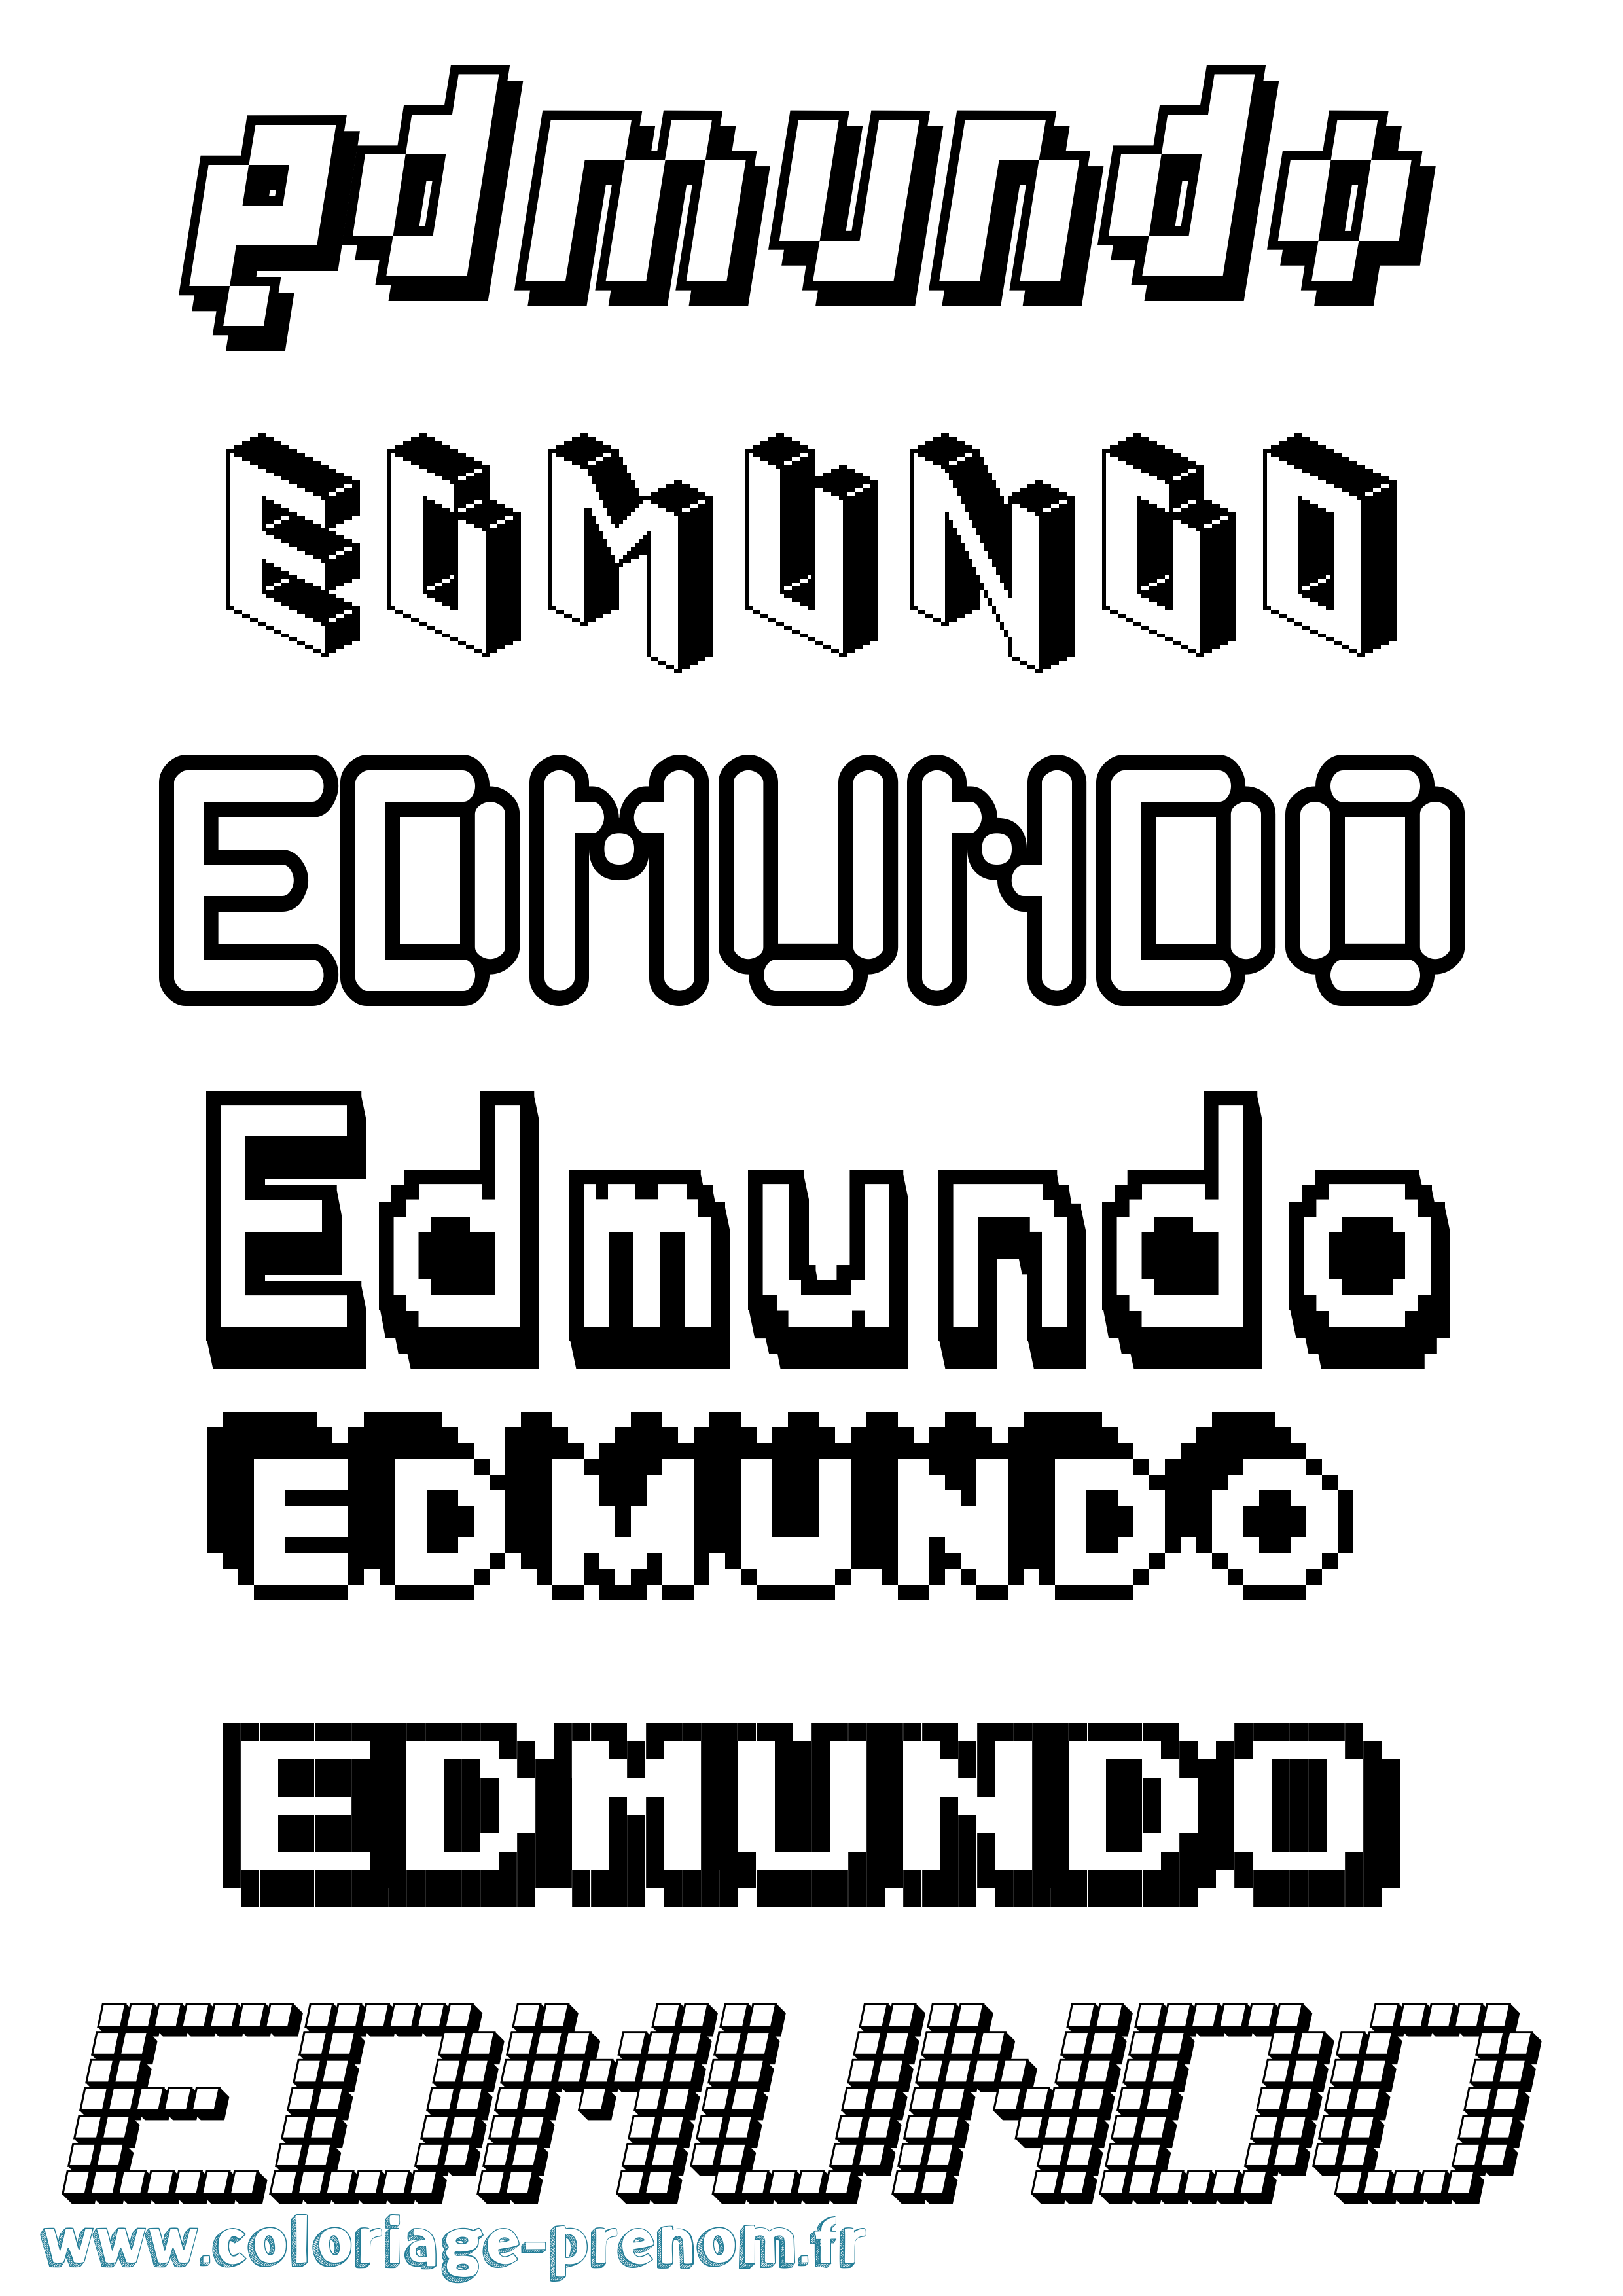 Coloriage prénom Edmundo Pixel